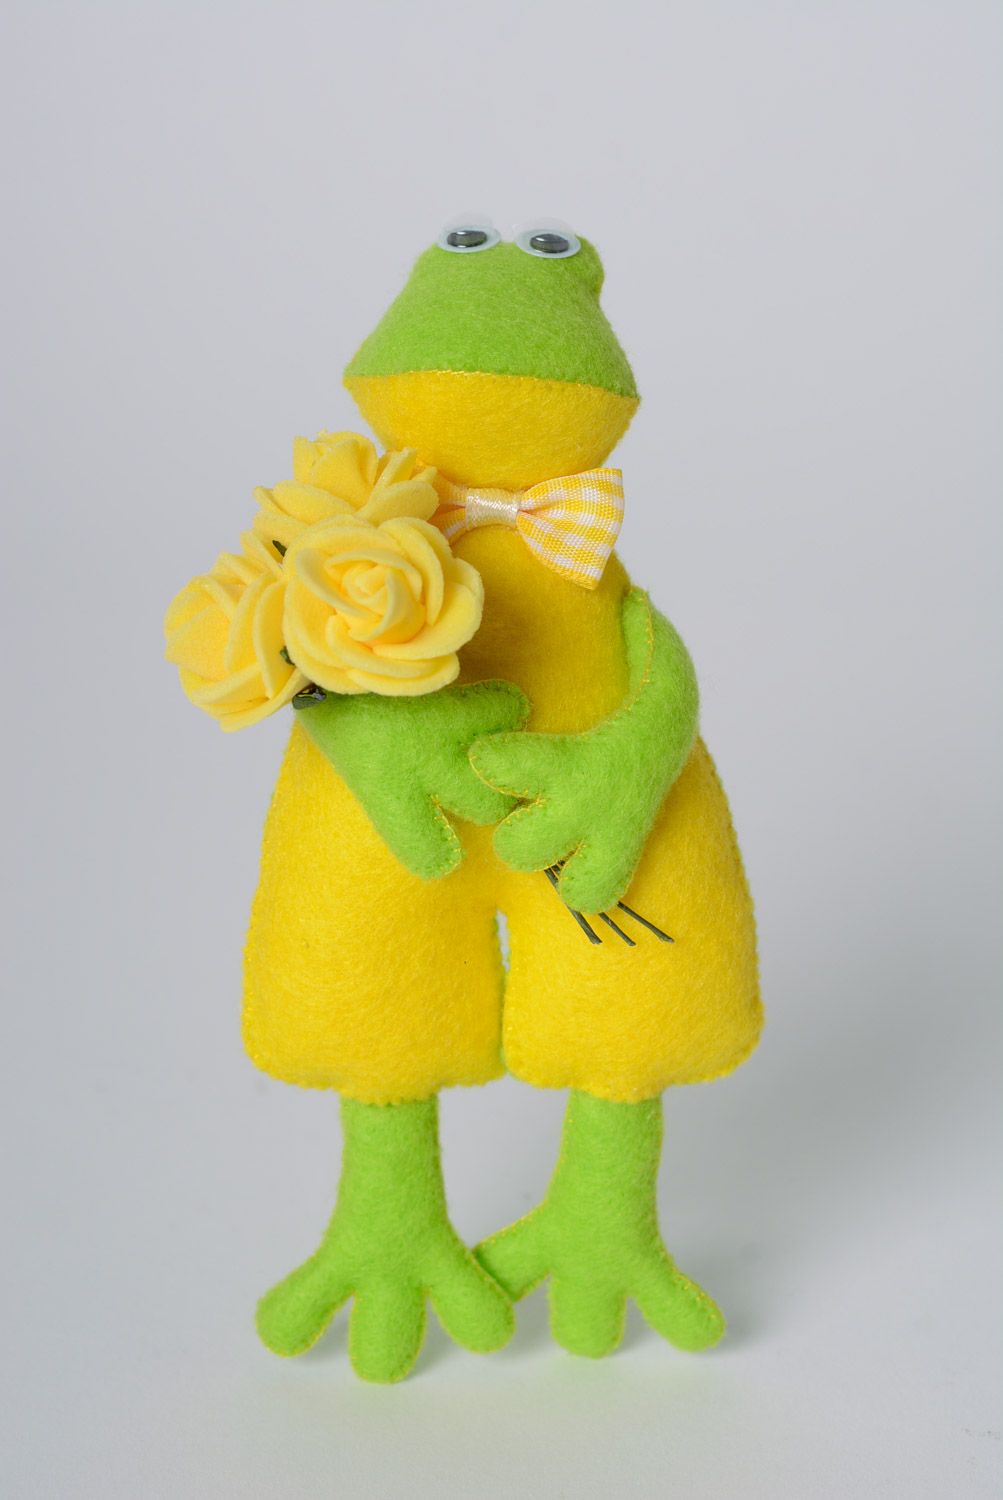 Jouet mou amusant fait main vert jaune en feutre petite grenouille sympa photo 1